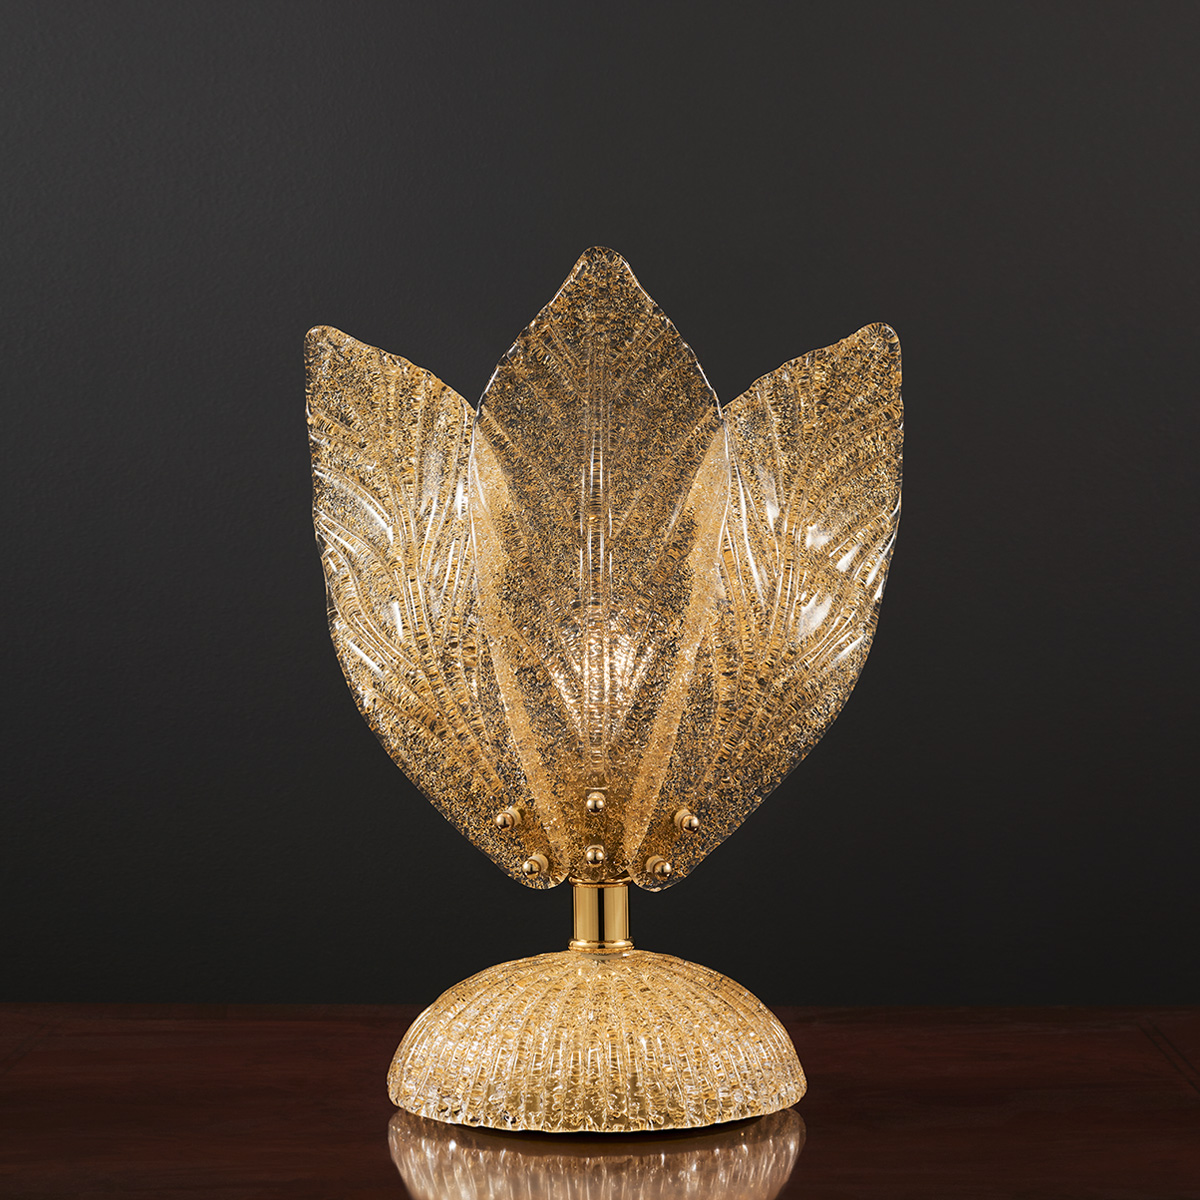 Κλασικό επιτραπέζιο φωτιστικό Μουράνο STELLA classical Murano table lamp